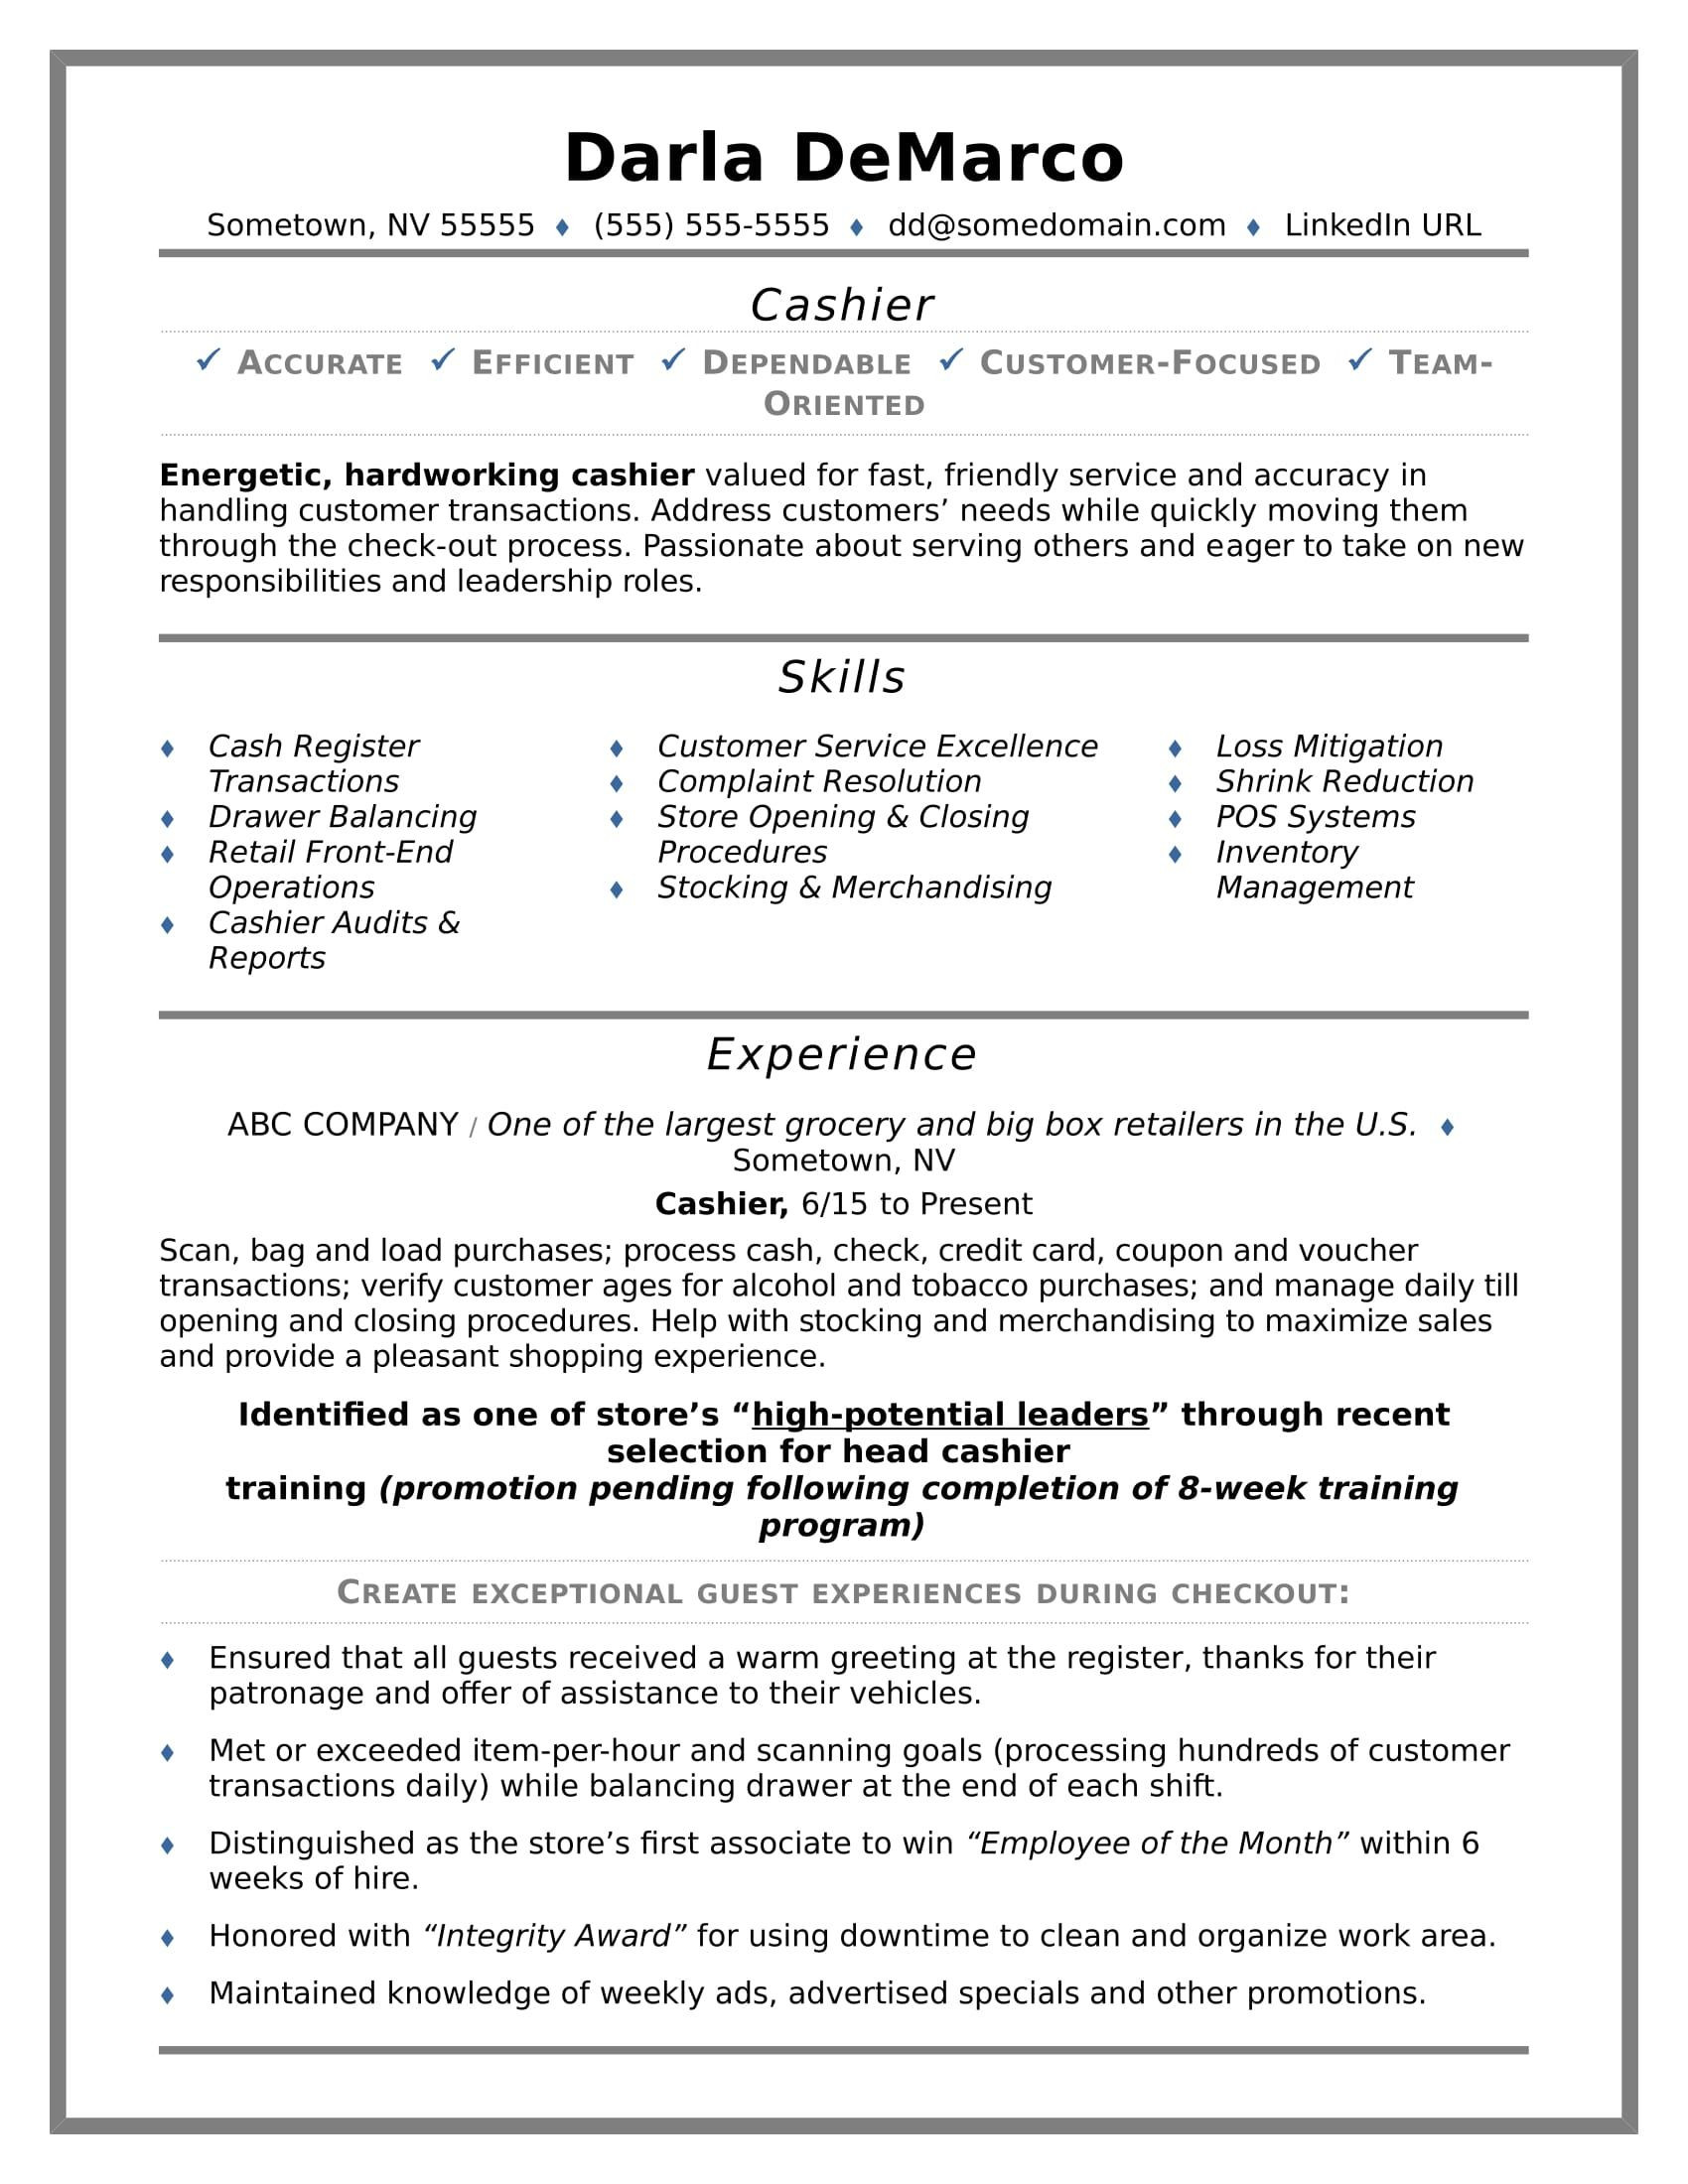 Sample Resume for Restaurant Cashier Position Cashier Resume Sample Job Resume Examples, Resume Examples, Job …